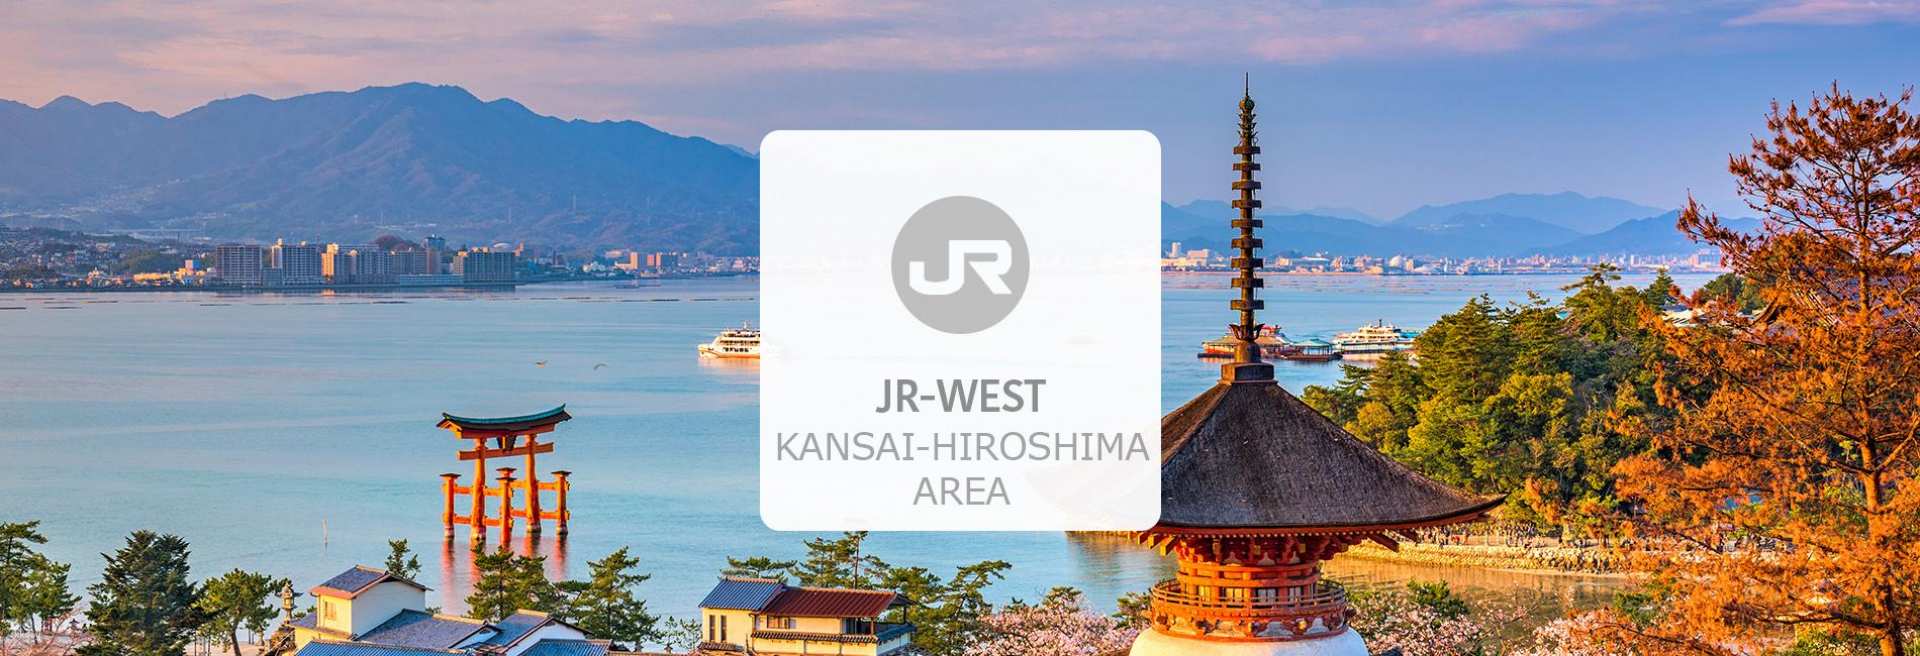 日本-關西&廣島地區5天JR PASS鐵路周遊券+瀨戶田周遊劵套票